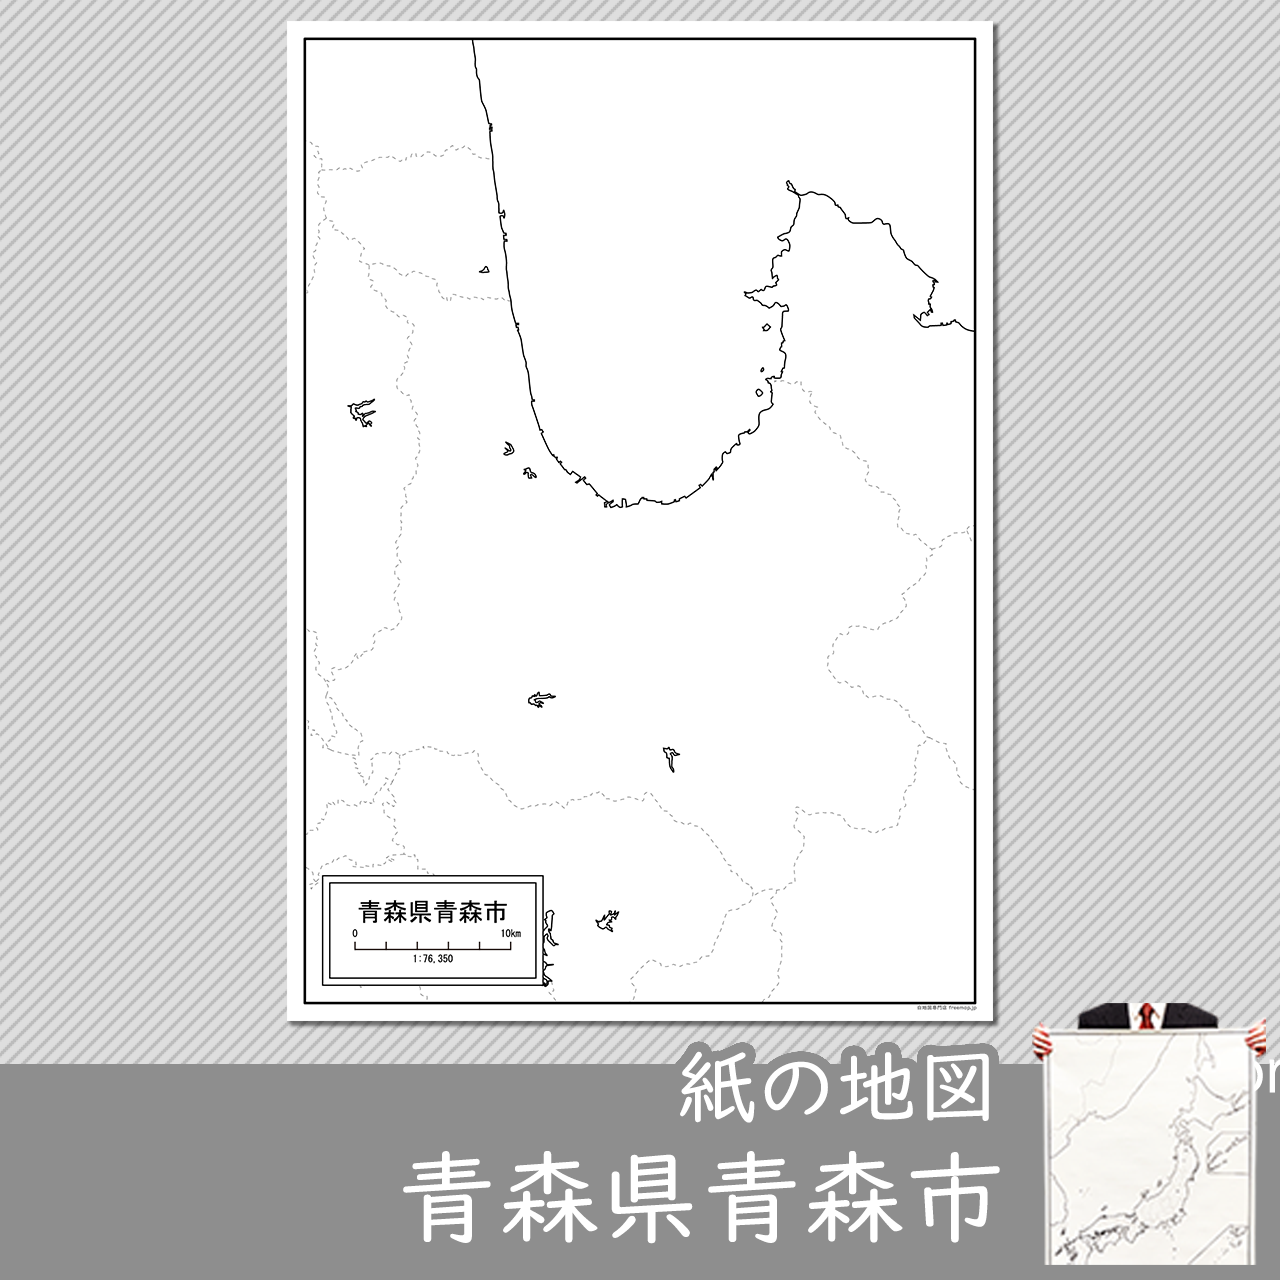 青森市の紙の白地図のサムネイル